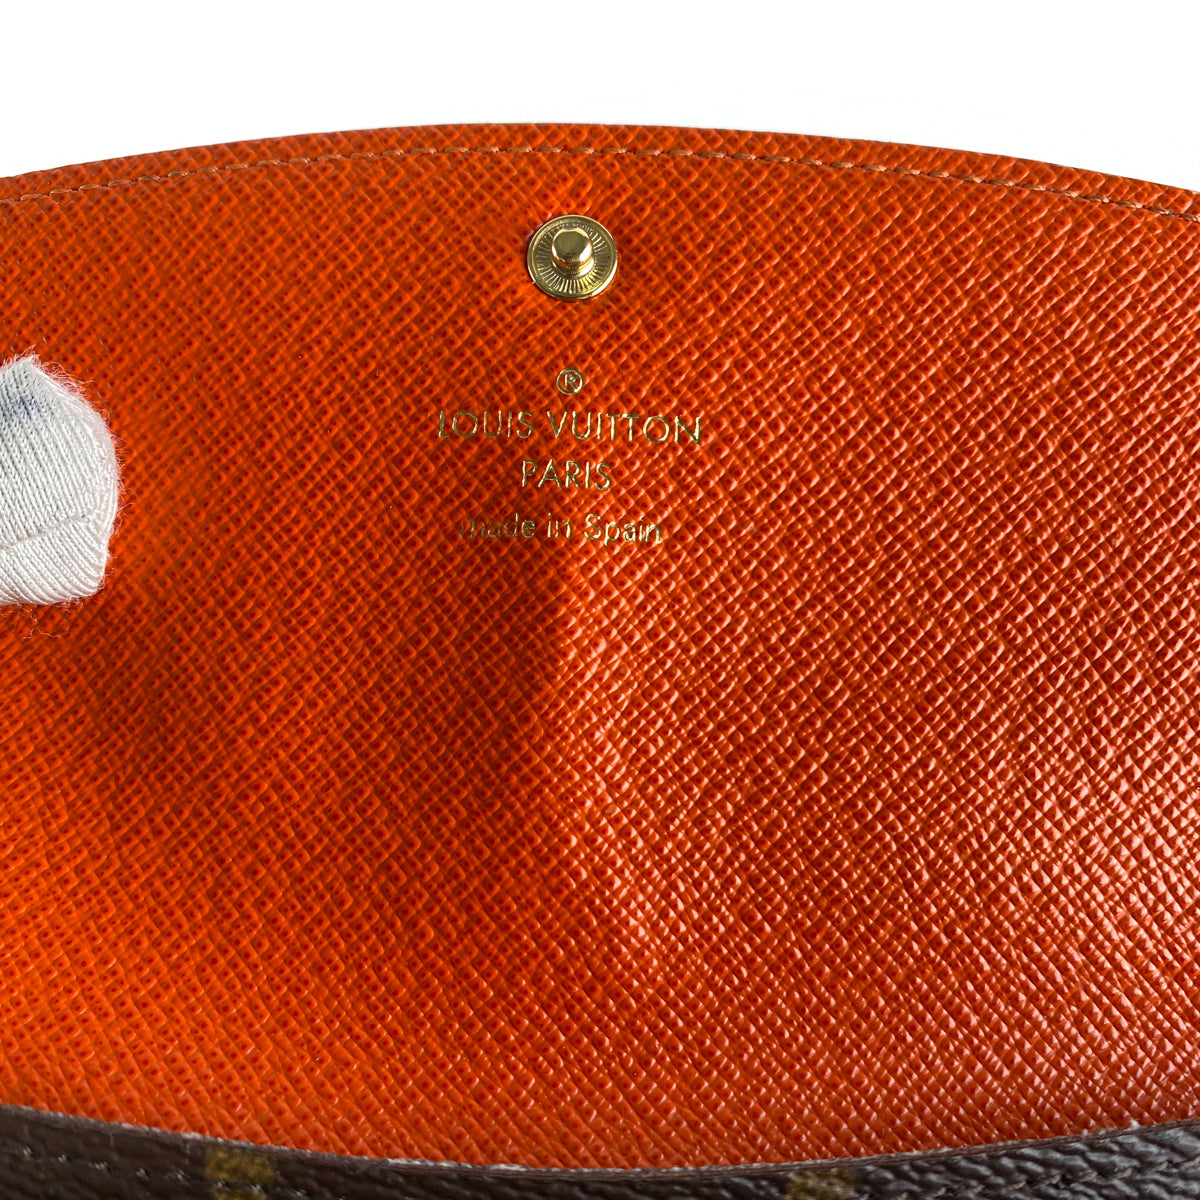 Louis Vuitton Emilie Wallet Monogram Orange - THE PURSE AFFAIR